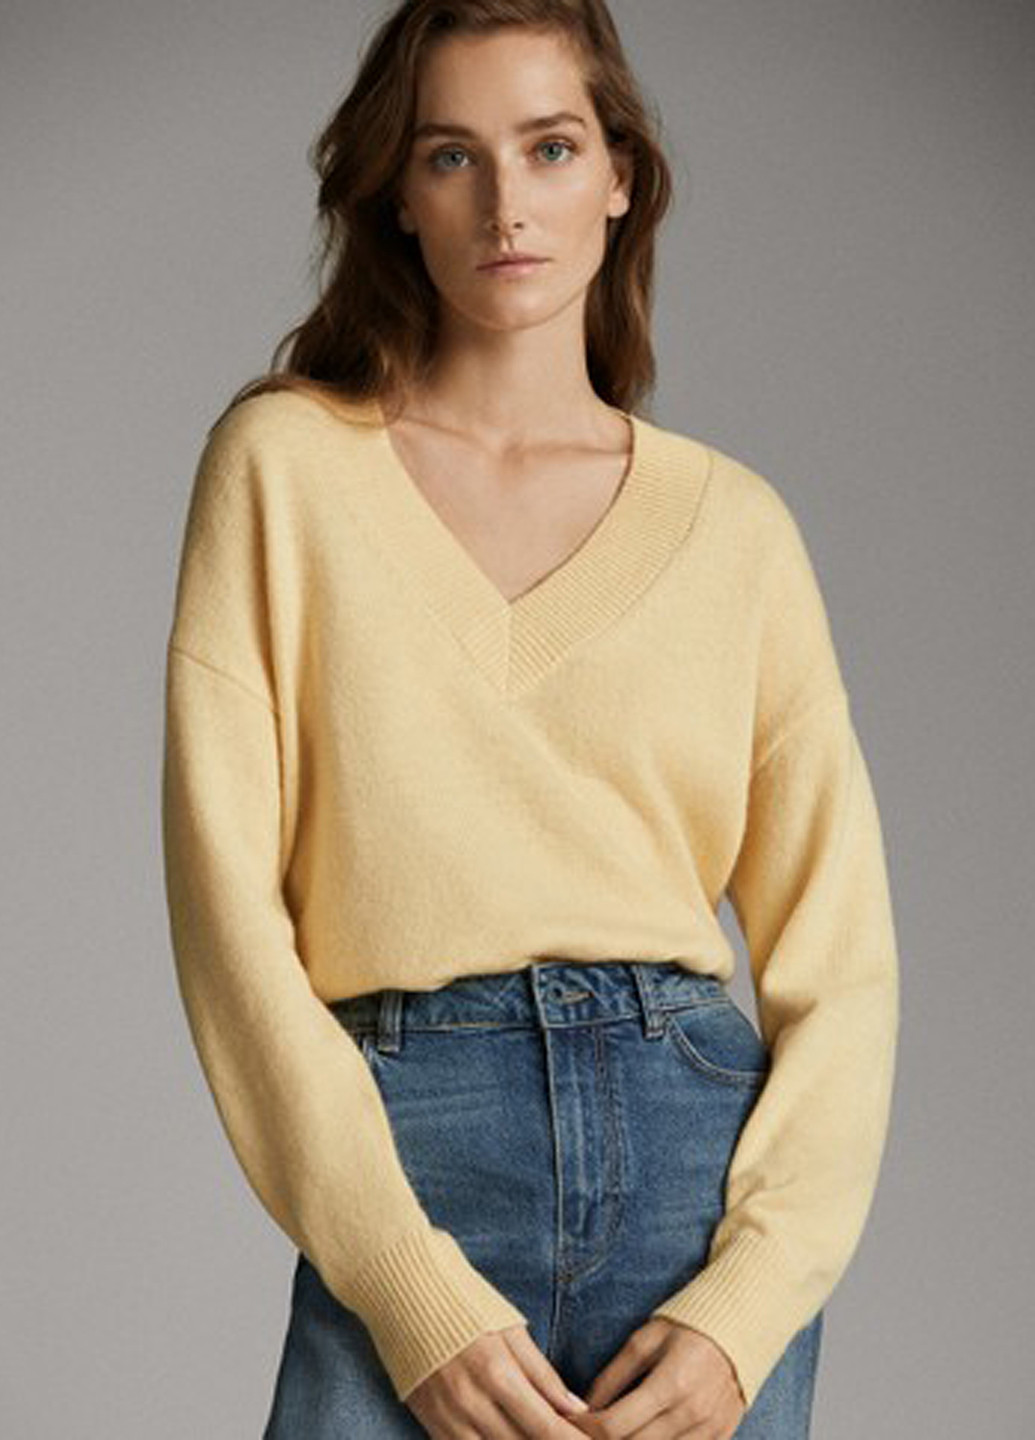 Желтый демисезонный пуловер пуловер Massimo Dutti